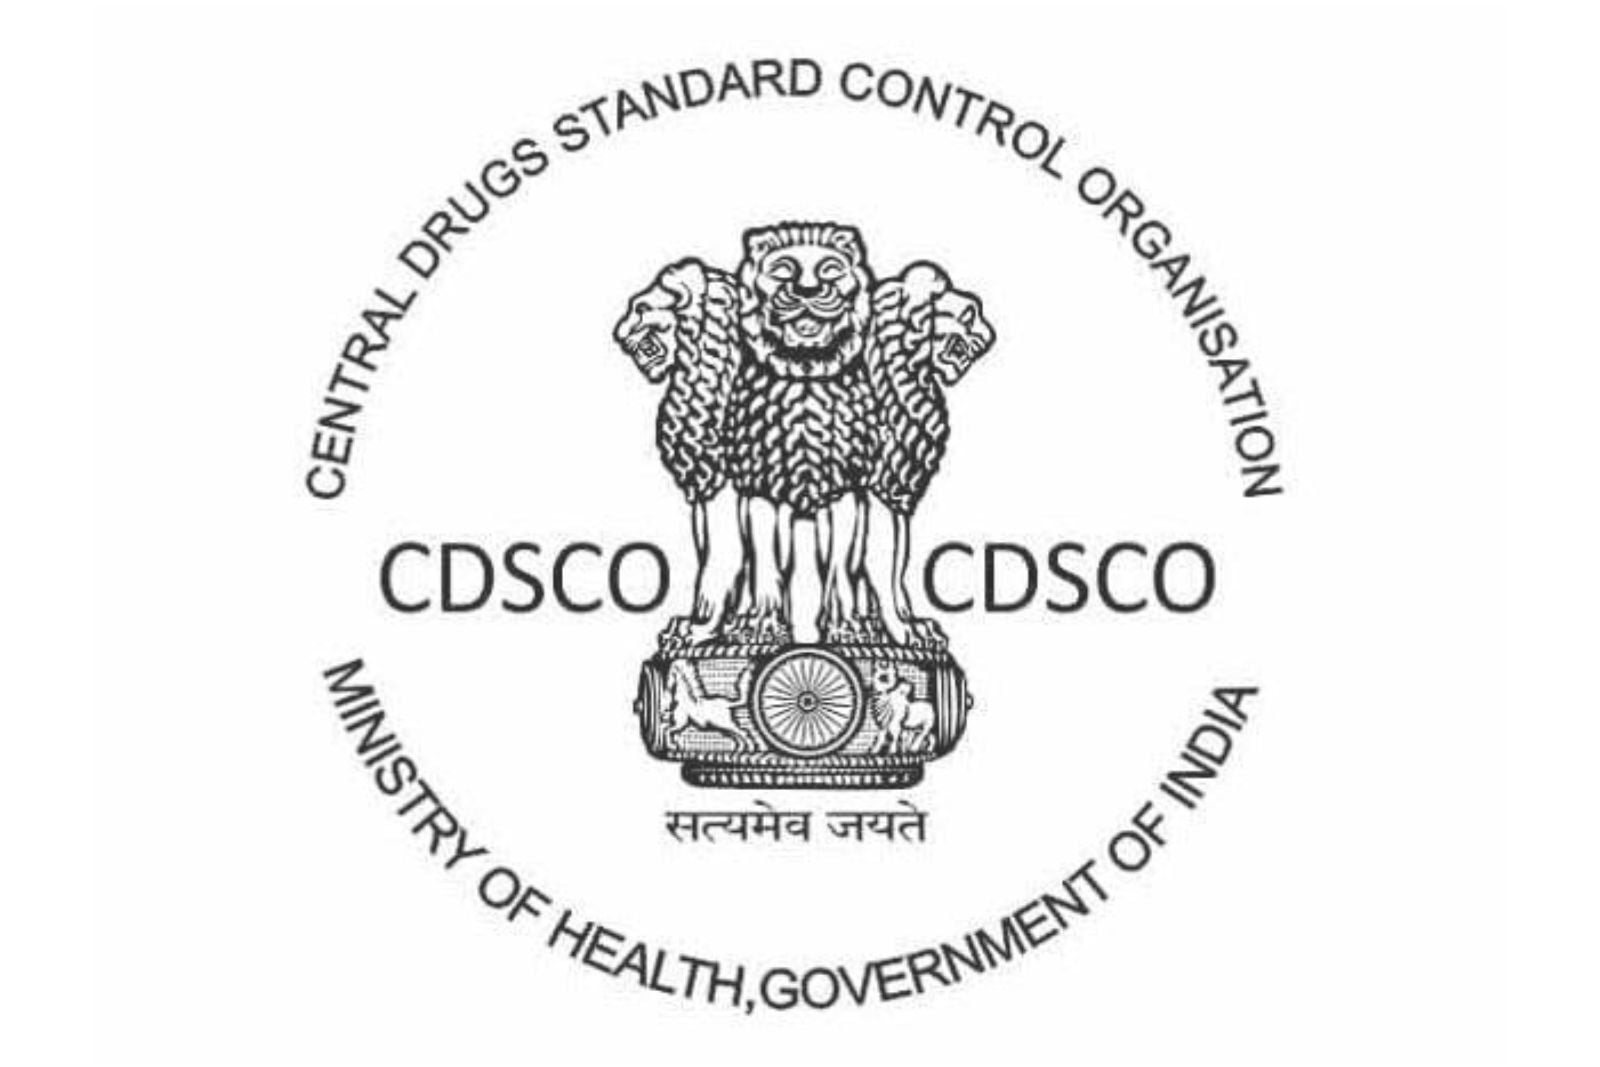 CDSCO registered